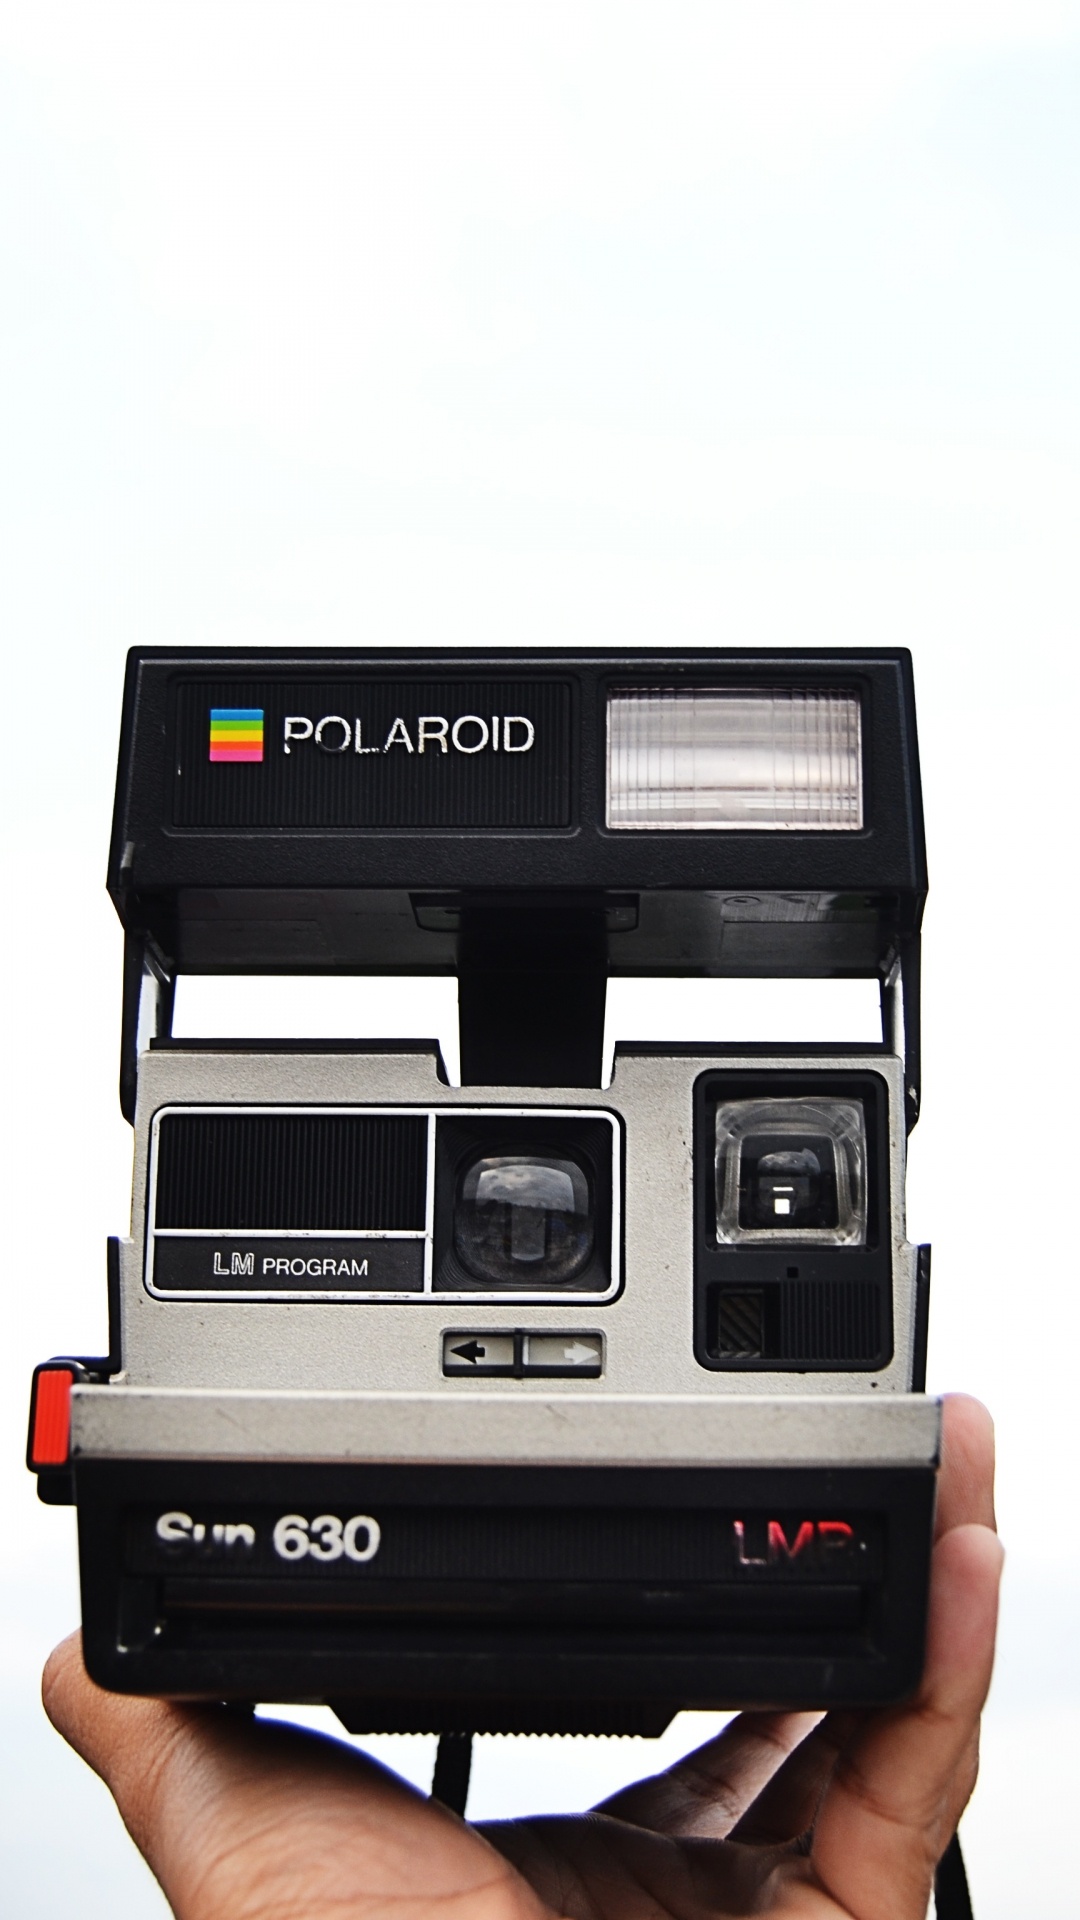 Schwarz-weiß Polaroid-Kamera. Wallpaper in 1080x1920 Resolution